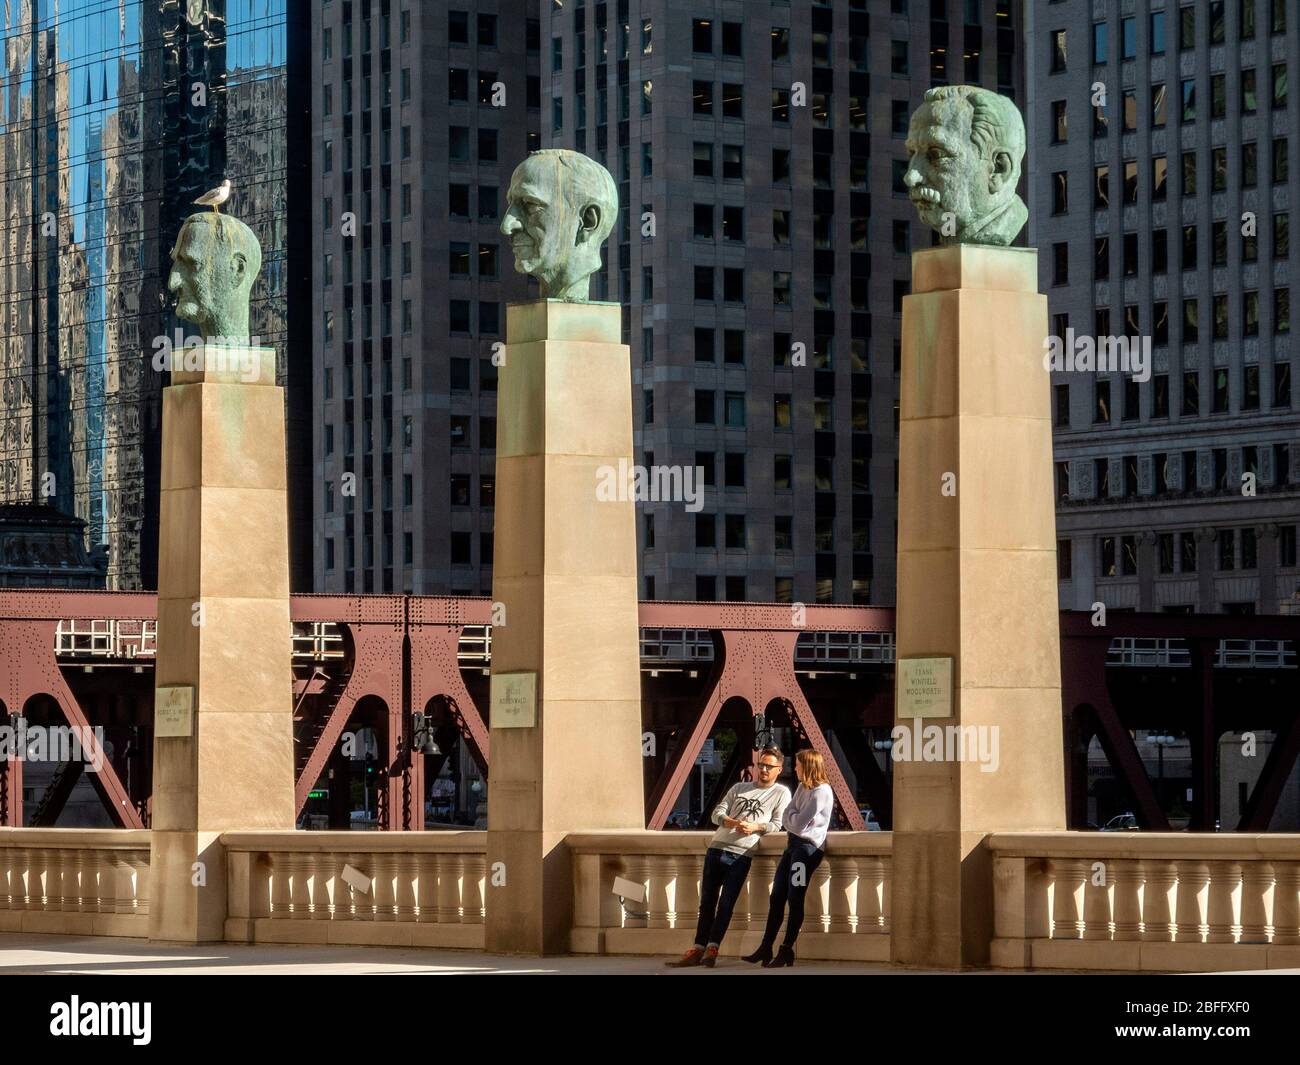 Estatuas de retratos de famosos empresarios Robert Wood, Julius Rosenwald y Frank Winfield Woolworth se encuentran en columnas antes del Merchandise Mart de Chicago en el río Chicago. Foto de stock